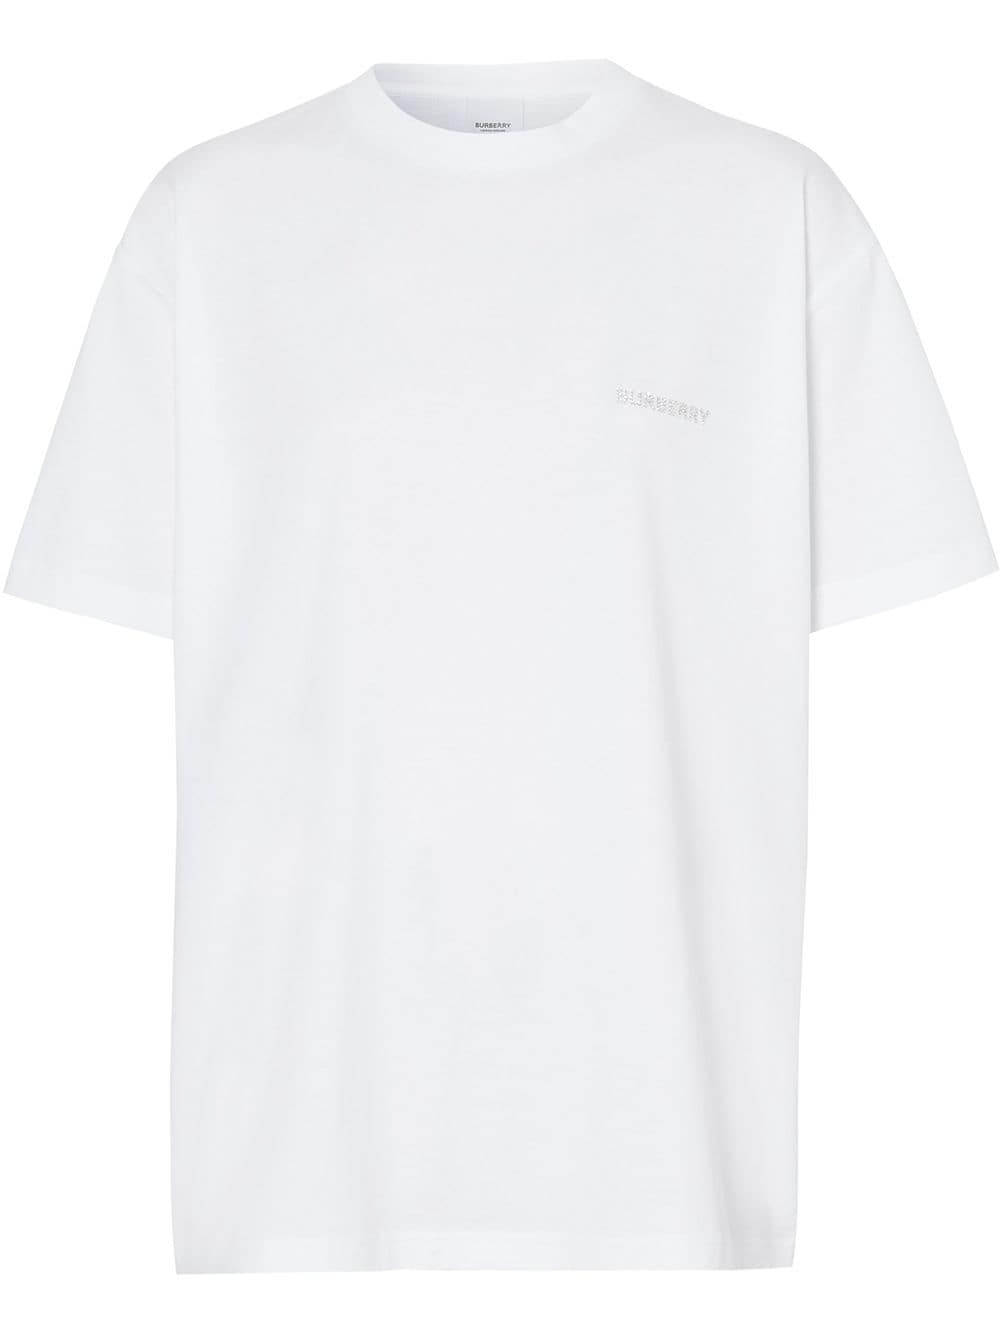 Burberry Crystal Logo T-shirt - Farfetch